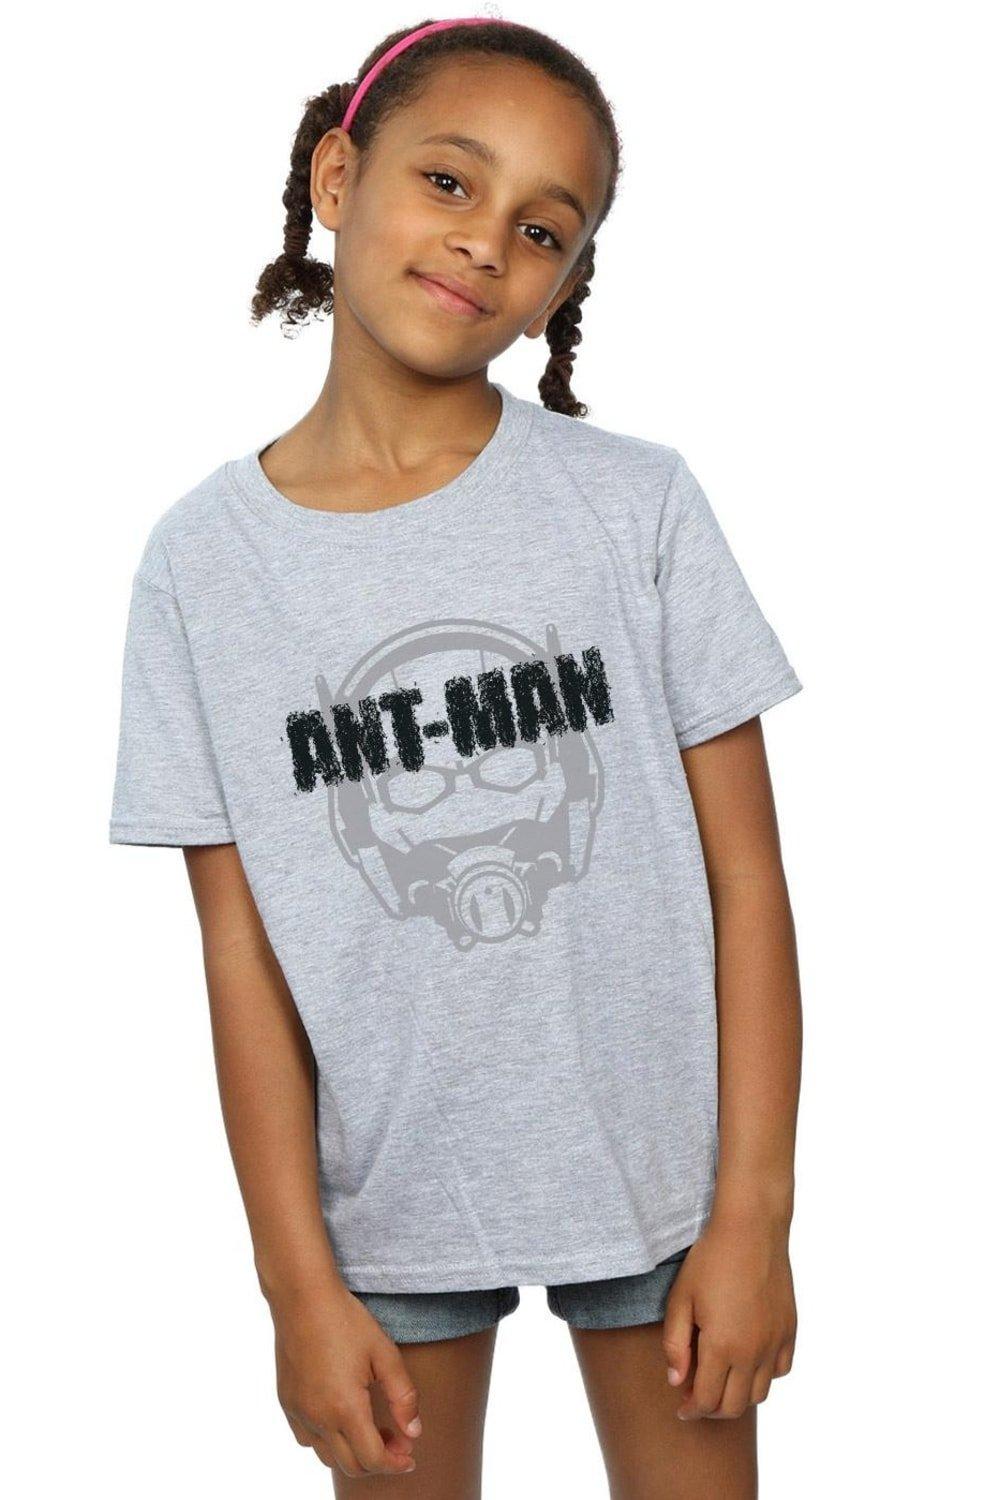 Хлопковая футболка с выцветшим шлемом «Человек-муравей» Marvel, серый